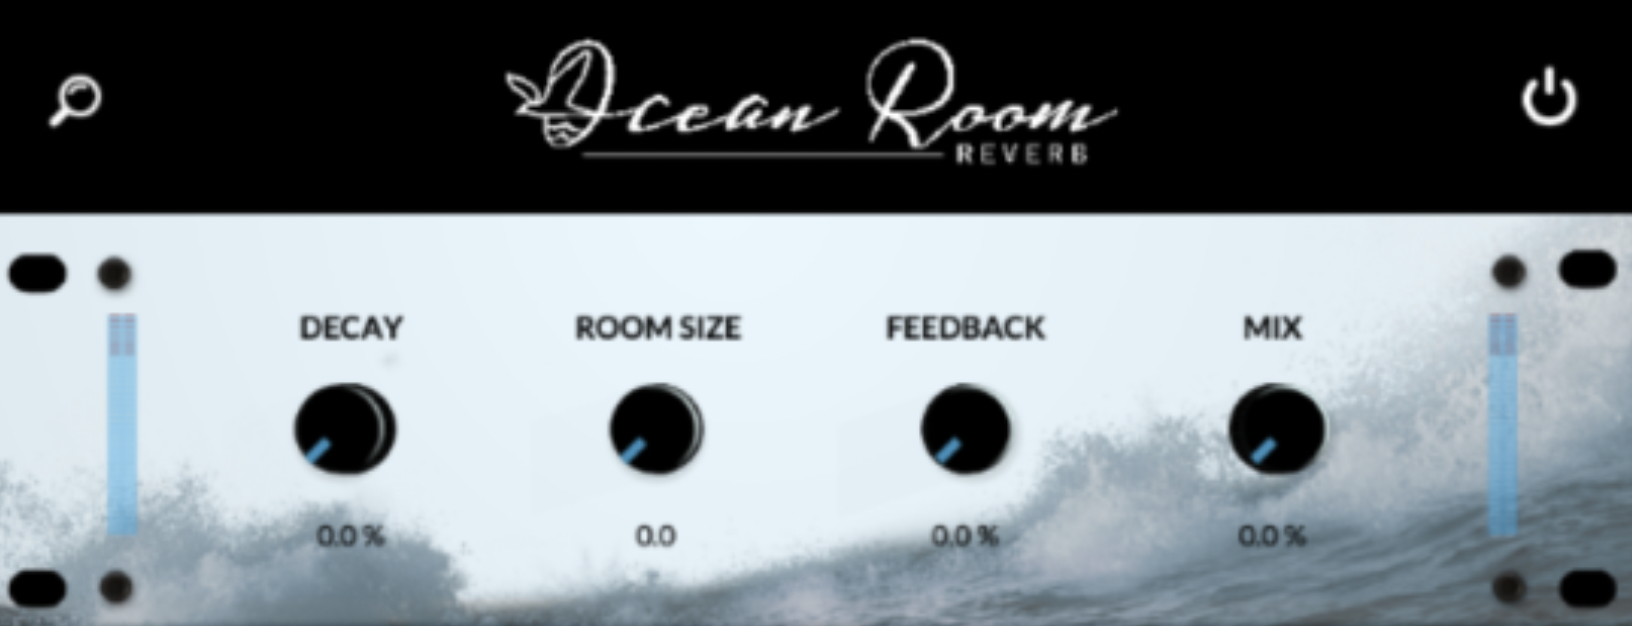 lotus-sound-ocean-room-343961.png